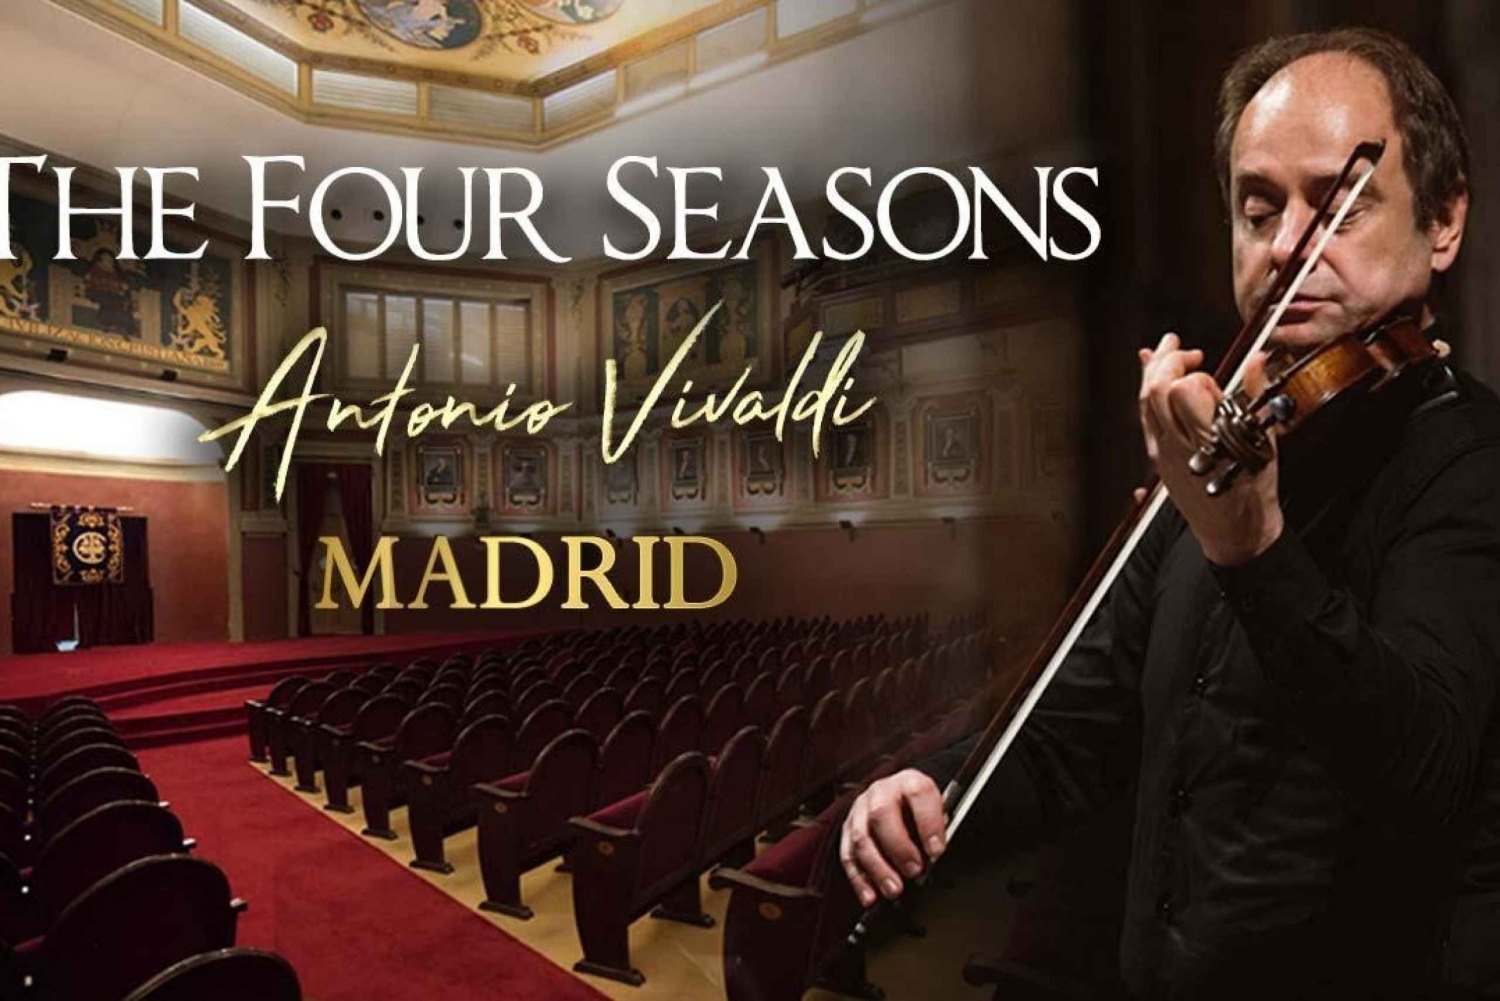 De fyra årstiderna av Vivaldi i Madrid